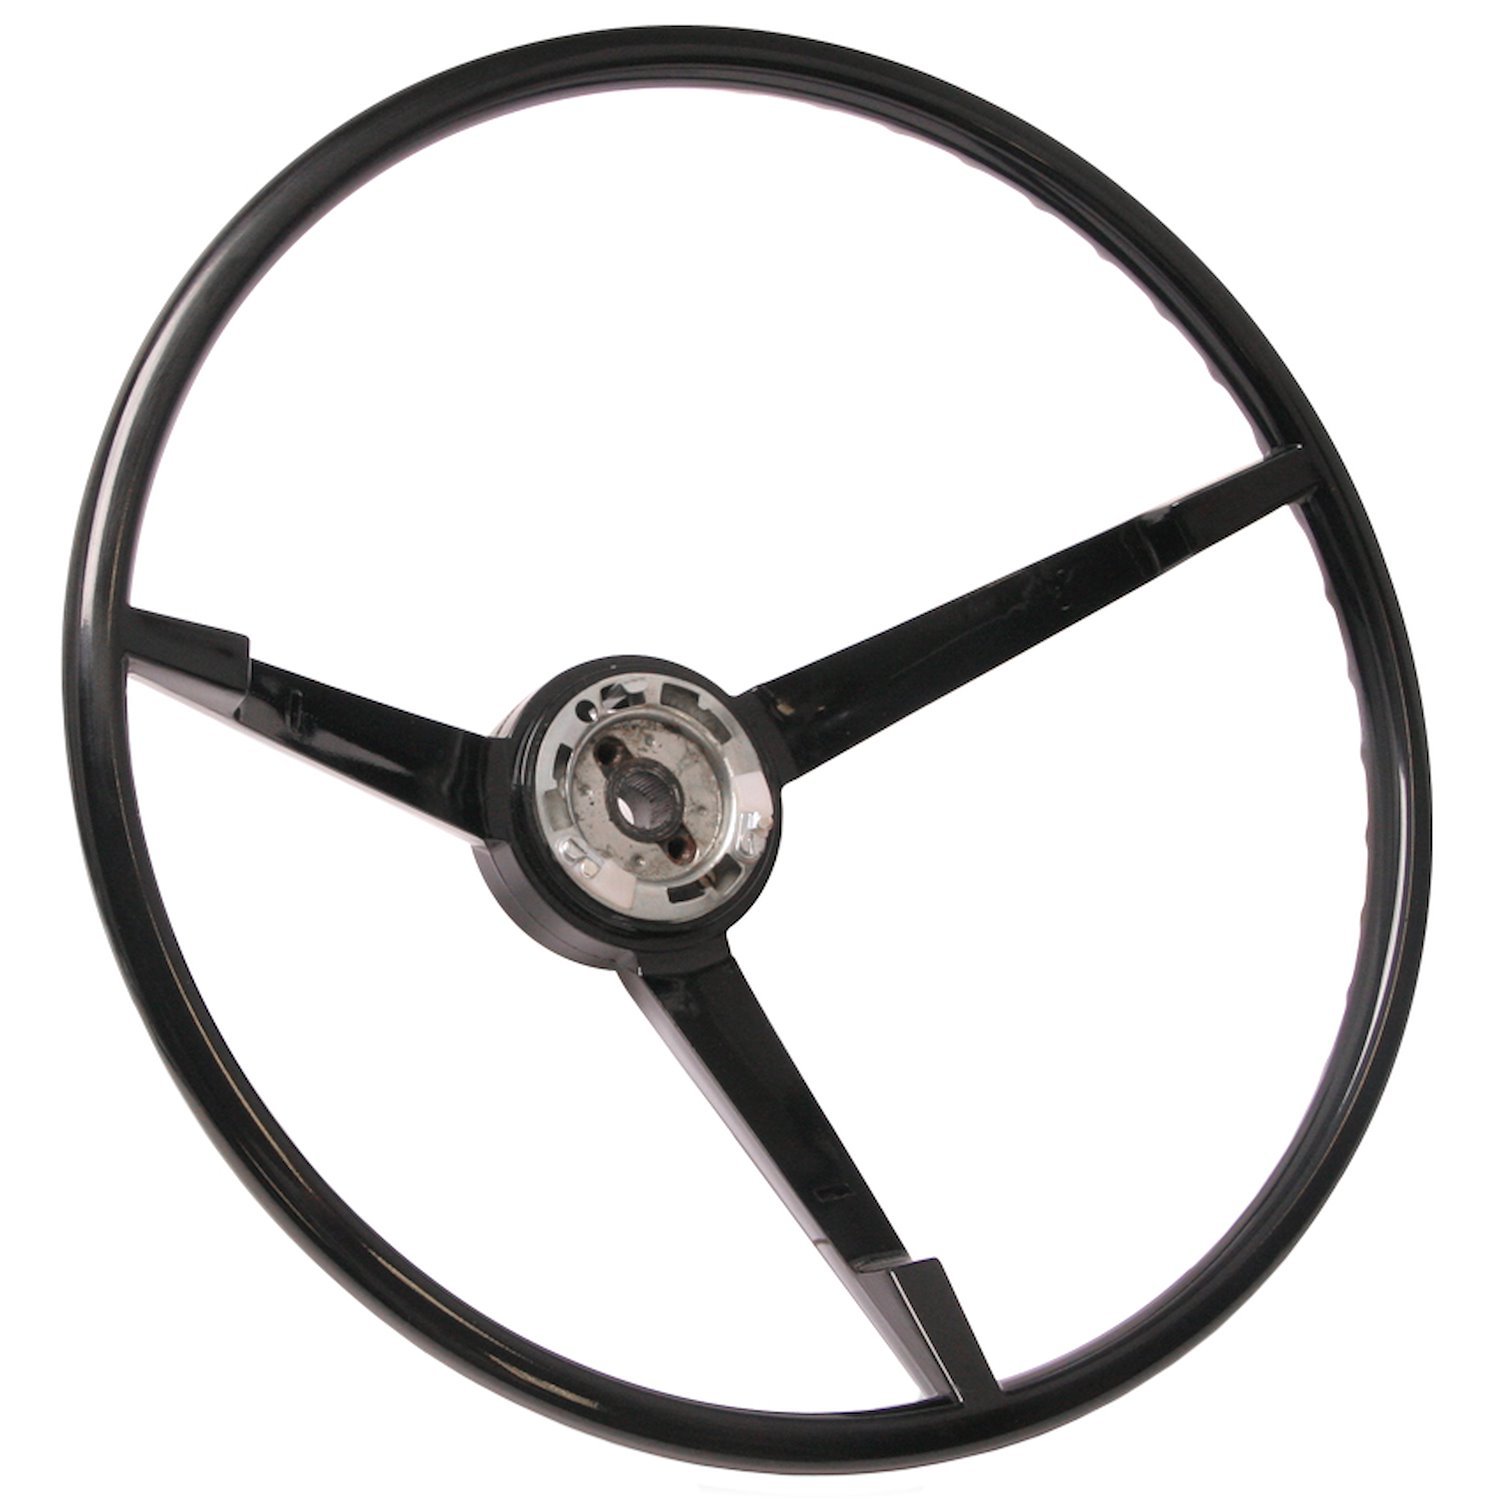 Standard Steering Wheel 1967 Ford Mustang